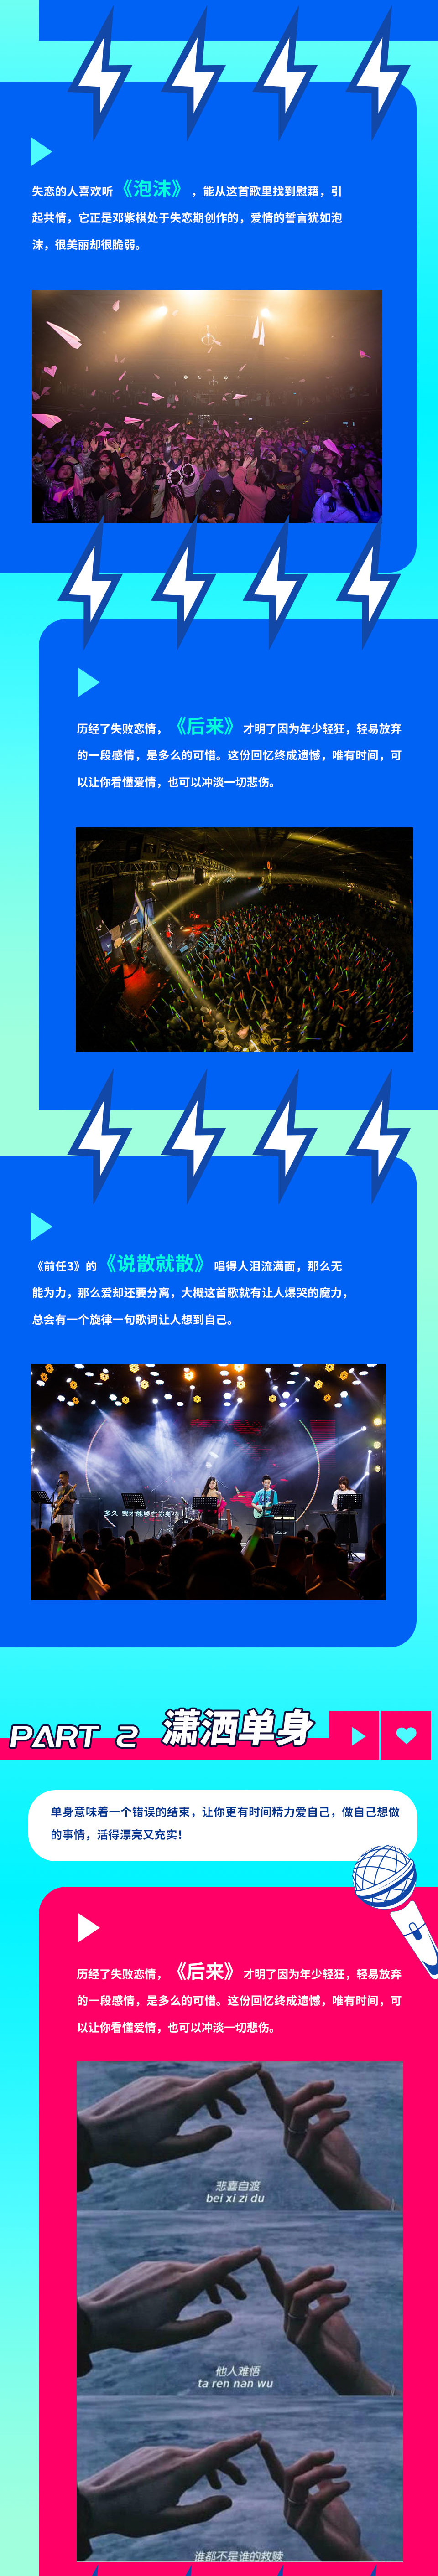 2021光棍节“唱给单身汪”演唱会-贵族狂欢不孤单-苏州站